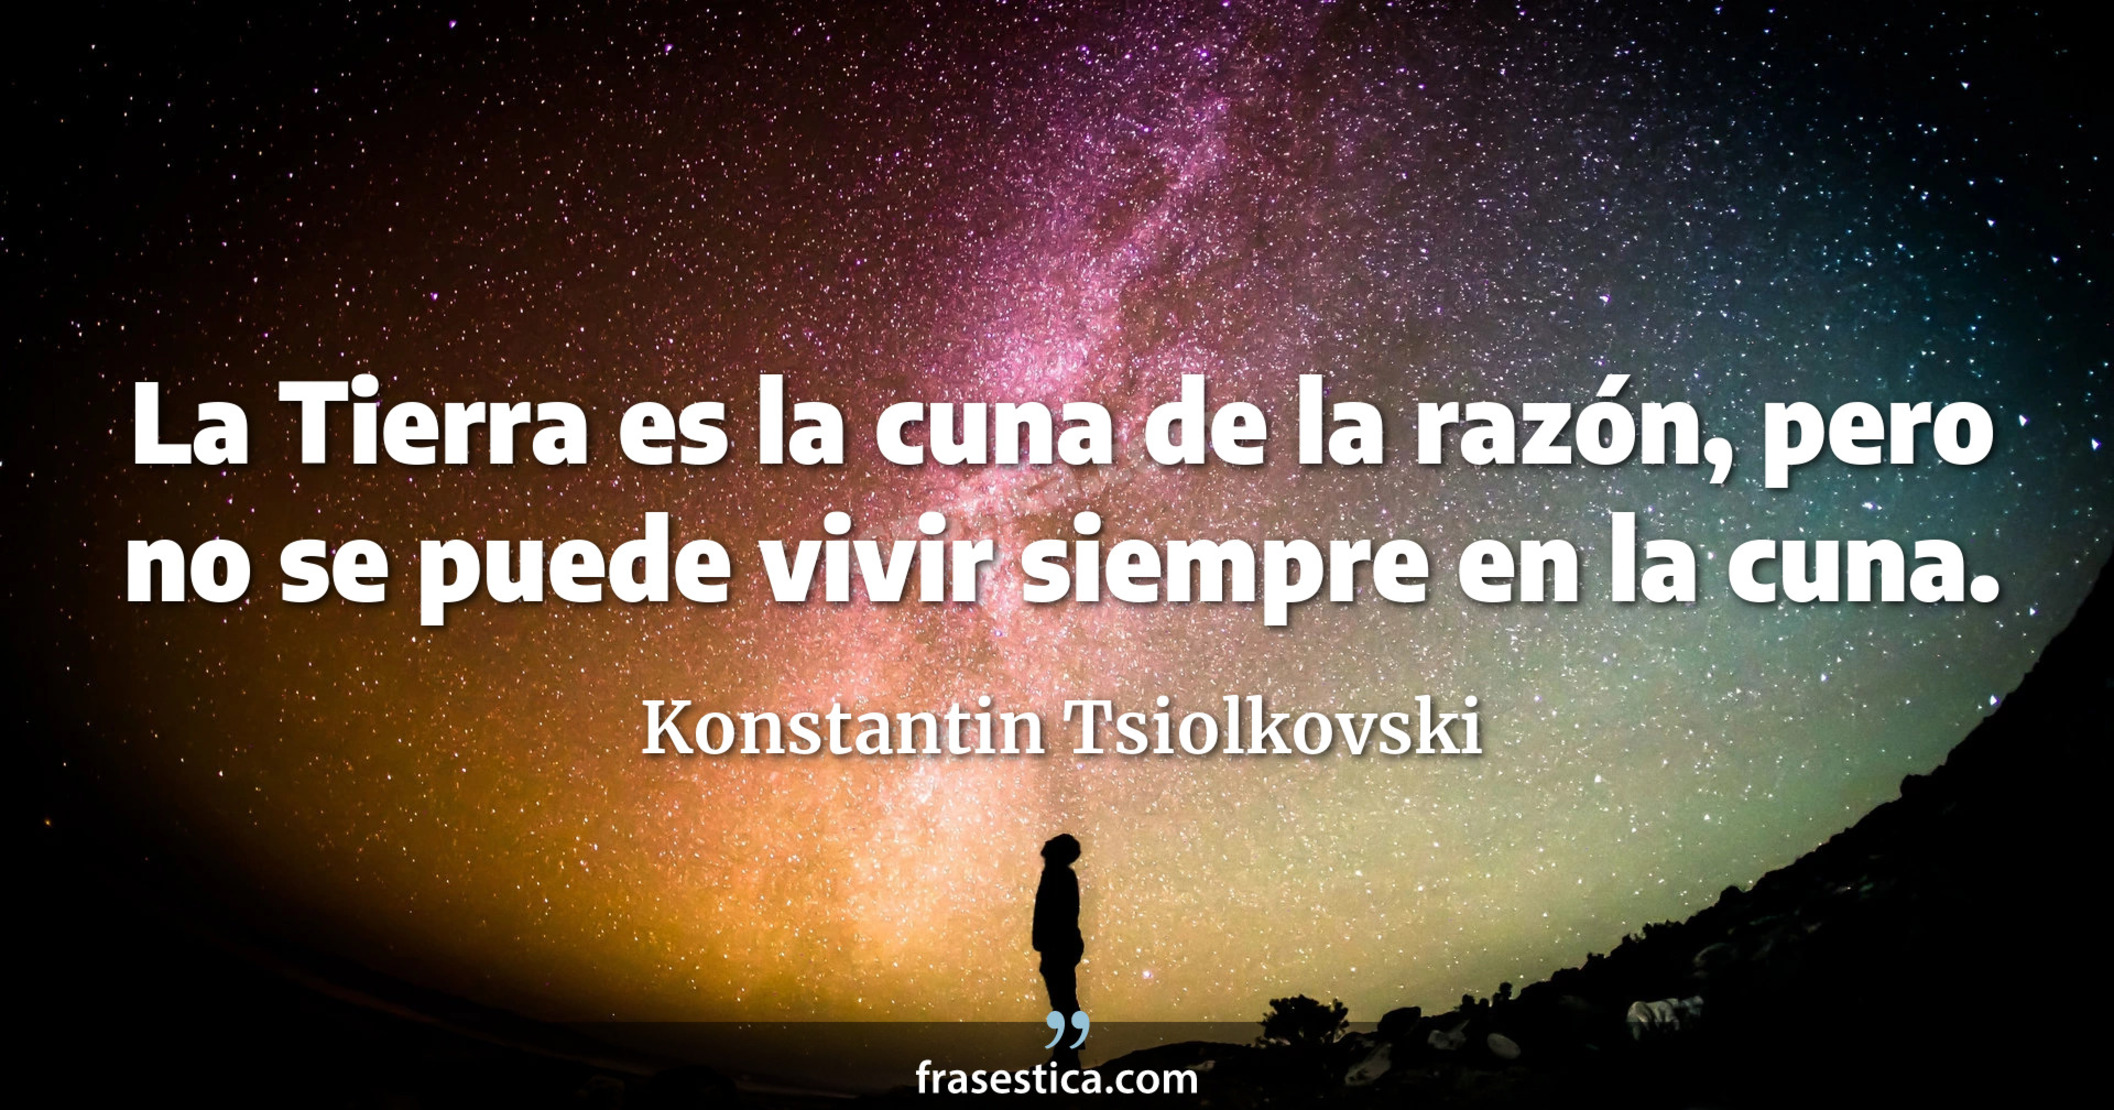 La Tierra es la cuna de la razón, pero no se puede vivir siempre en la cuna. - Konstantin Tsiolkovski